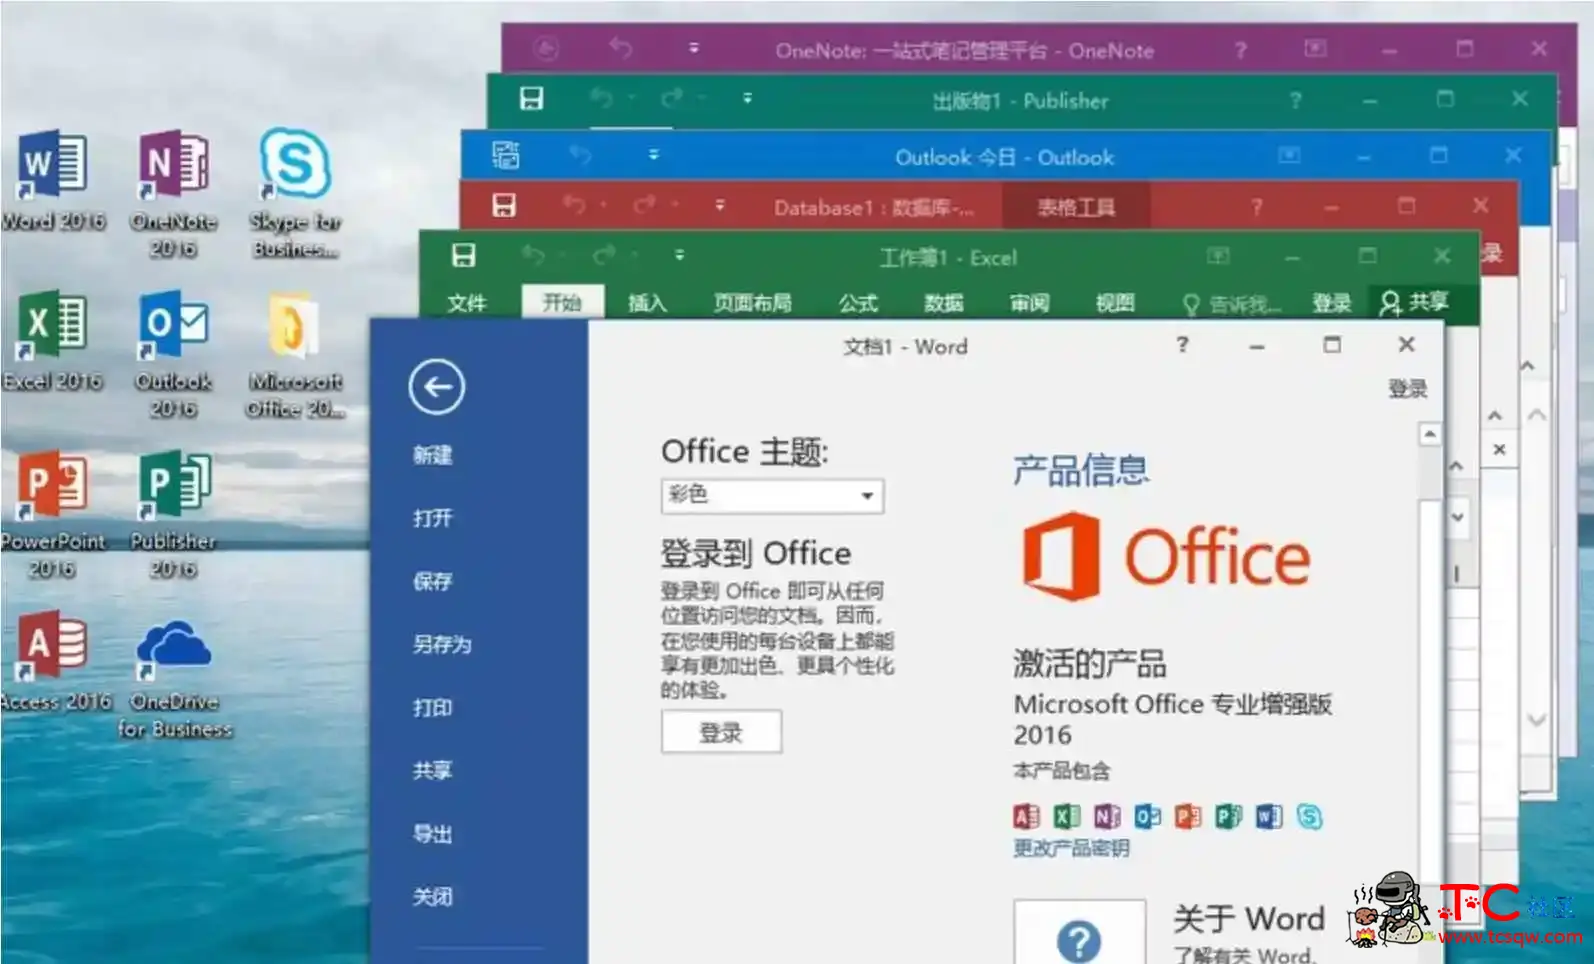 微软Office 2016 批量授权版商业版批量授权工具 屠城辅助网www.tcfz1.com33